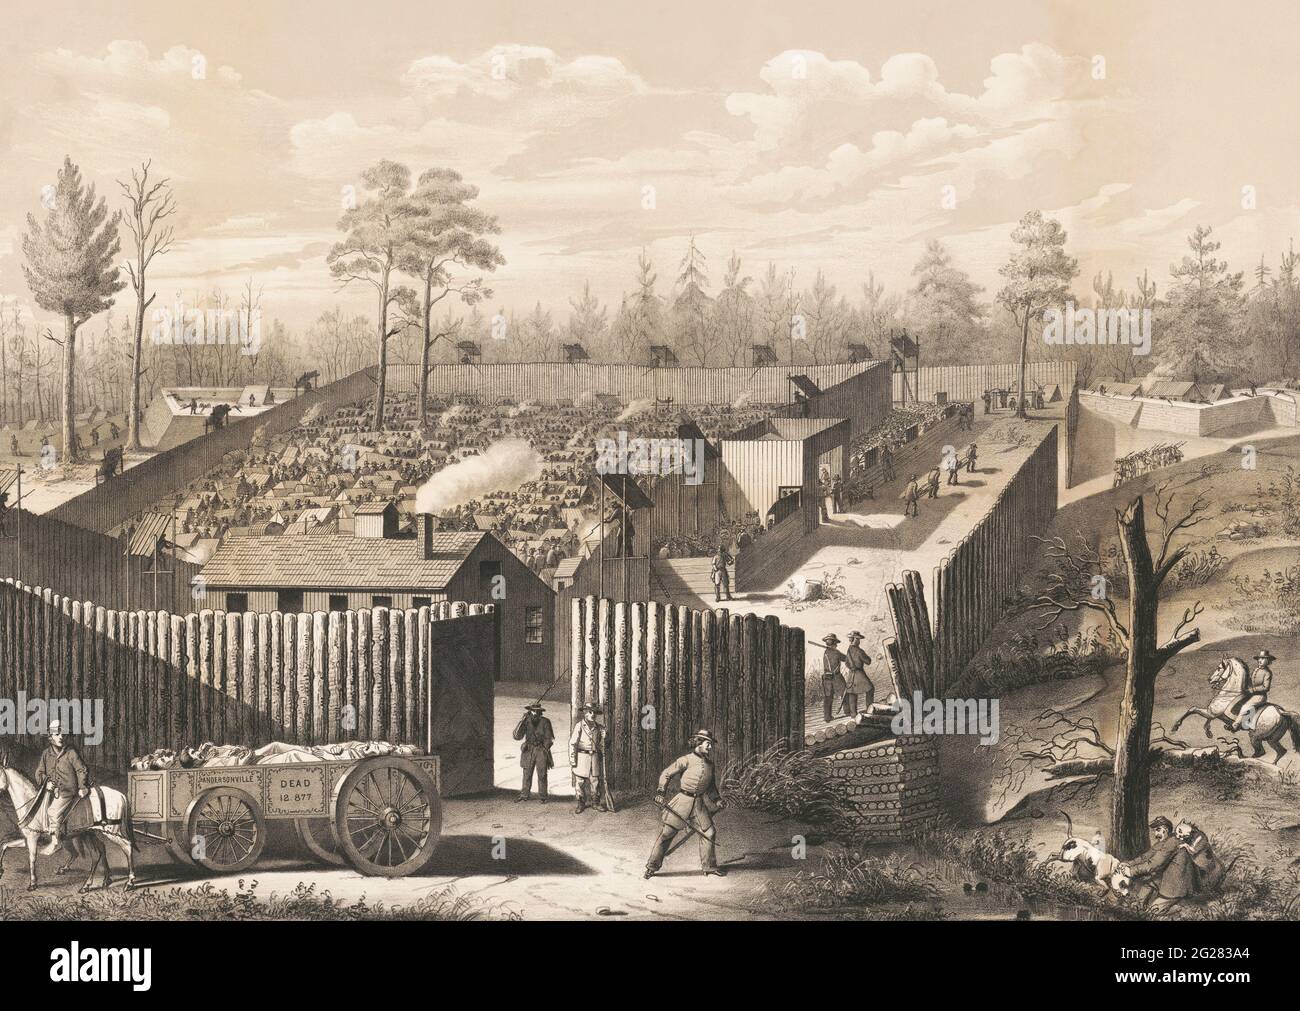 Andersonville prison. Georgia, circa 1864. Stock Photo